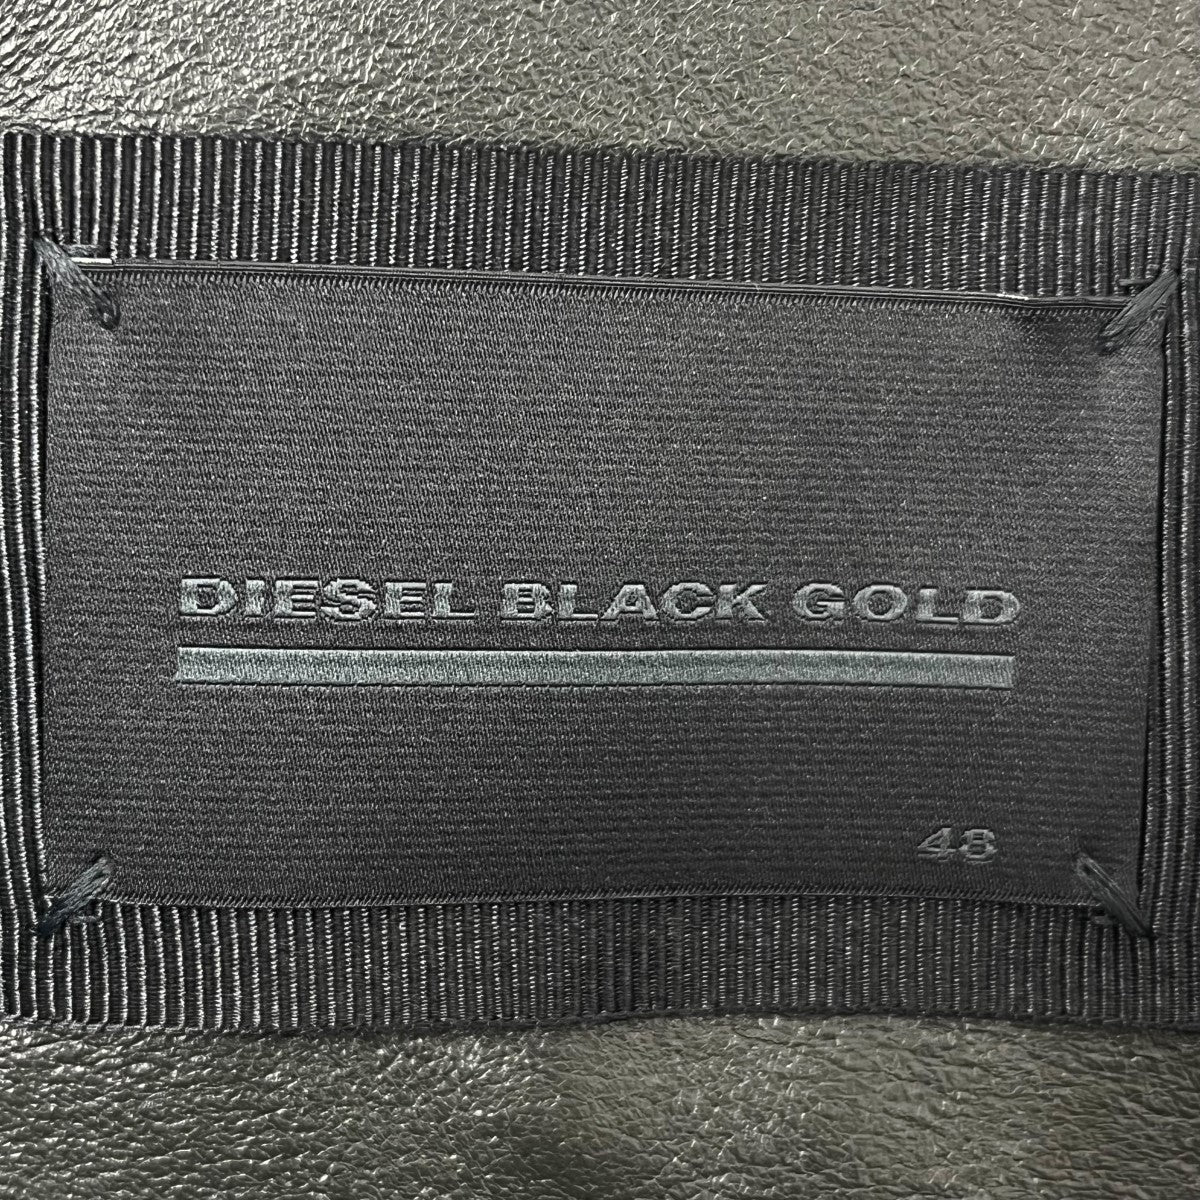 DIESEL BLACK GOLD(ディーゼルブラックゴールド) セミダブルレザー ...